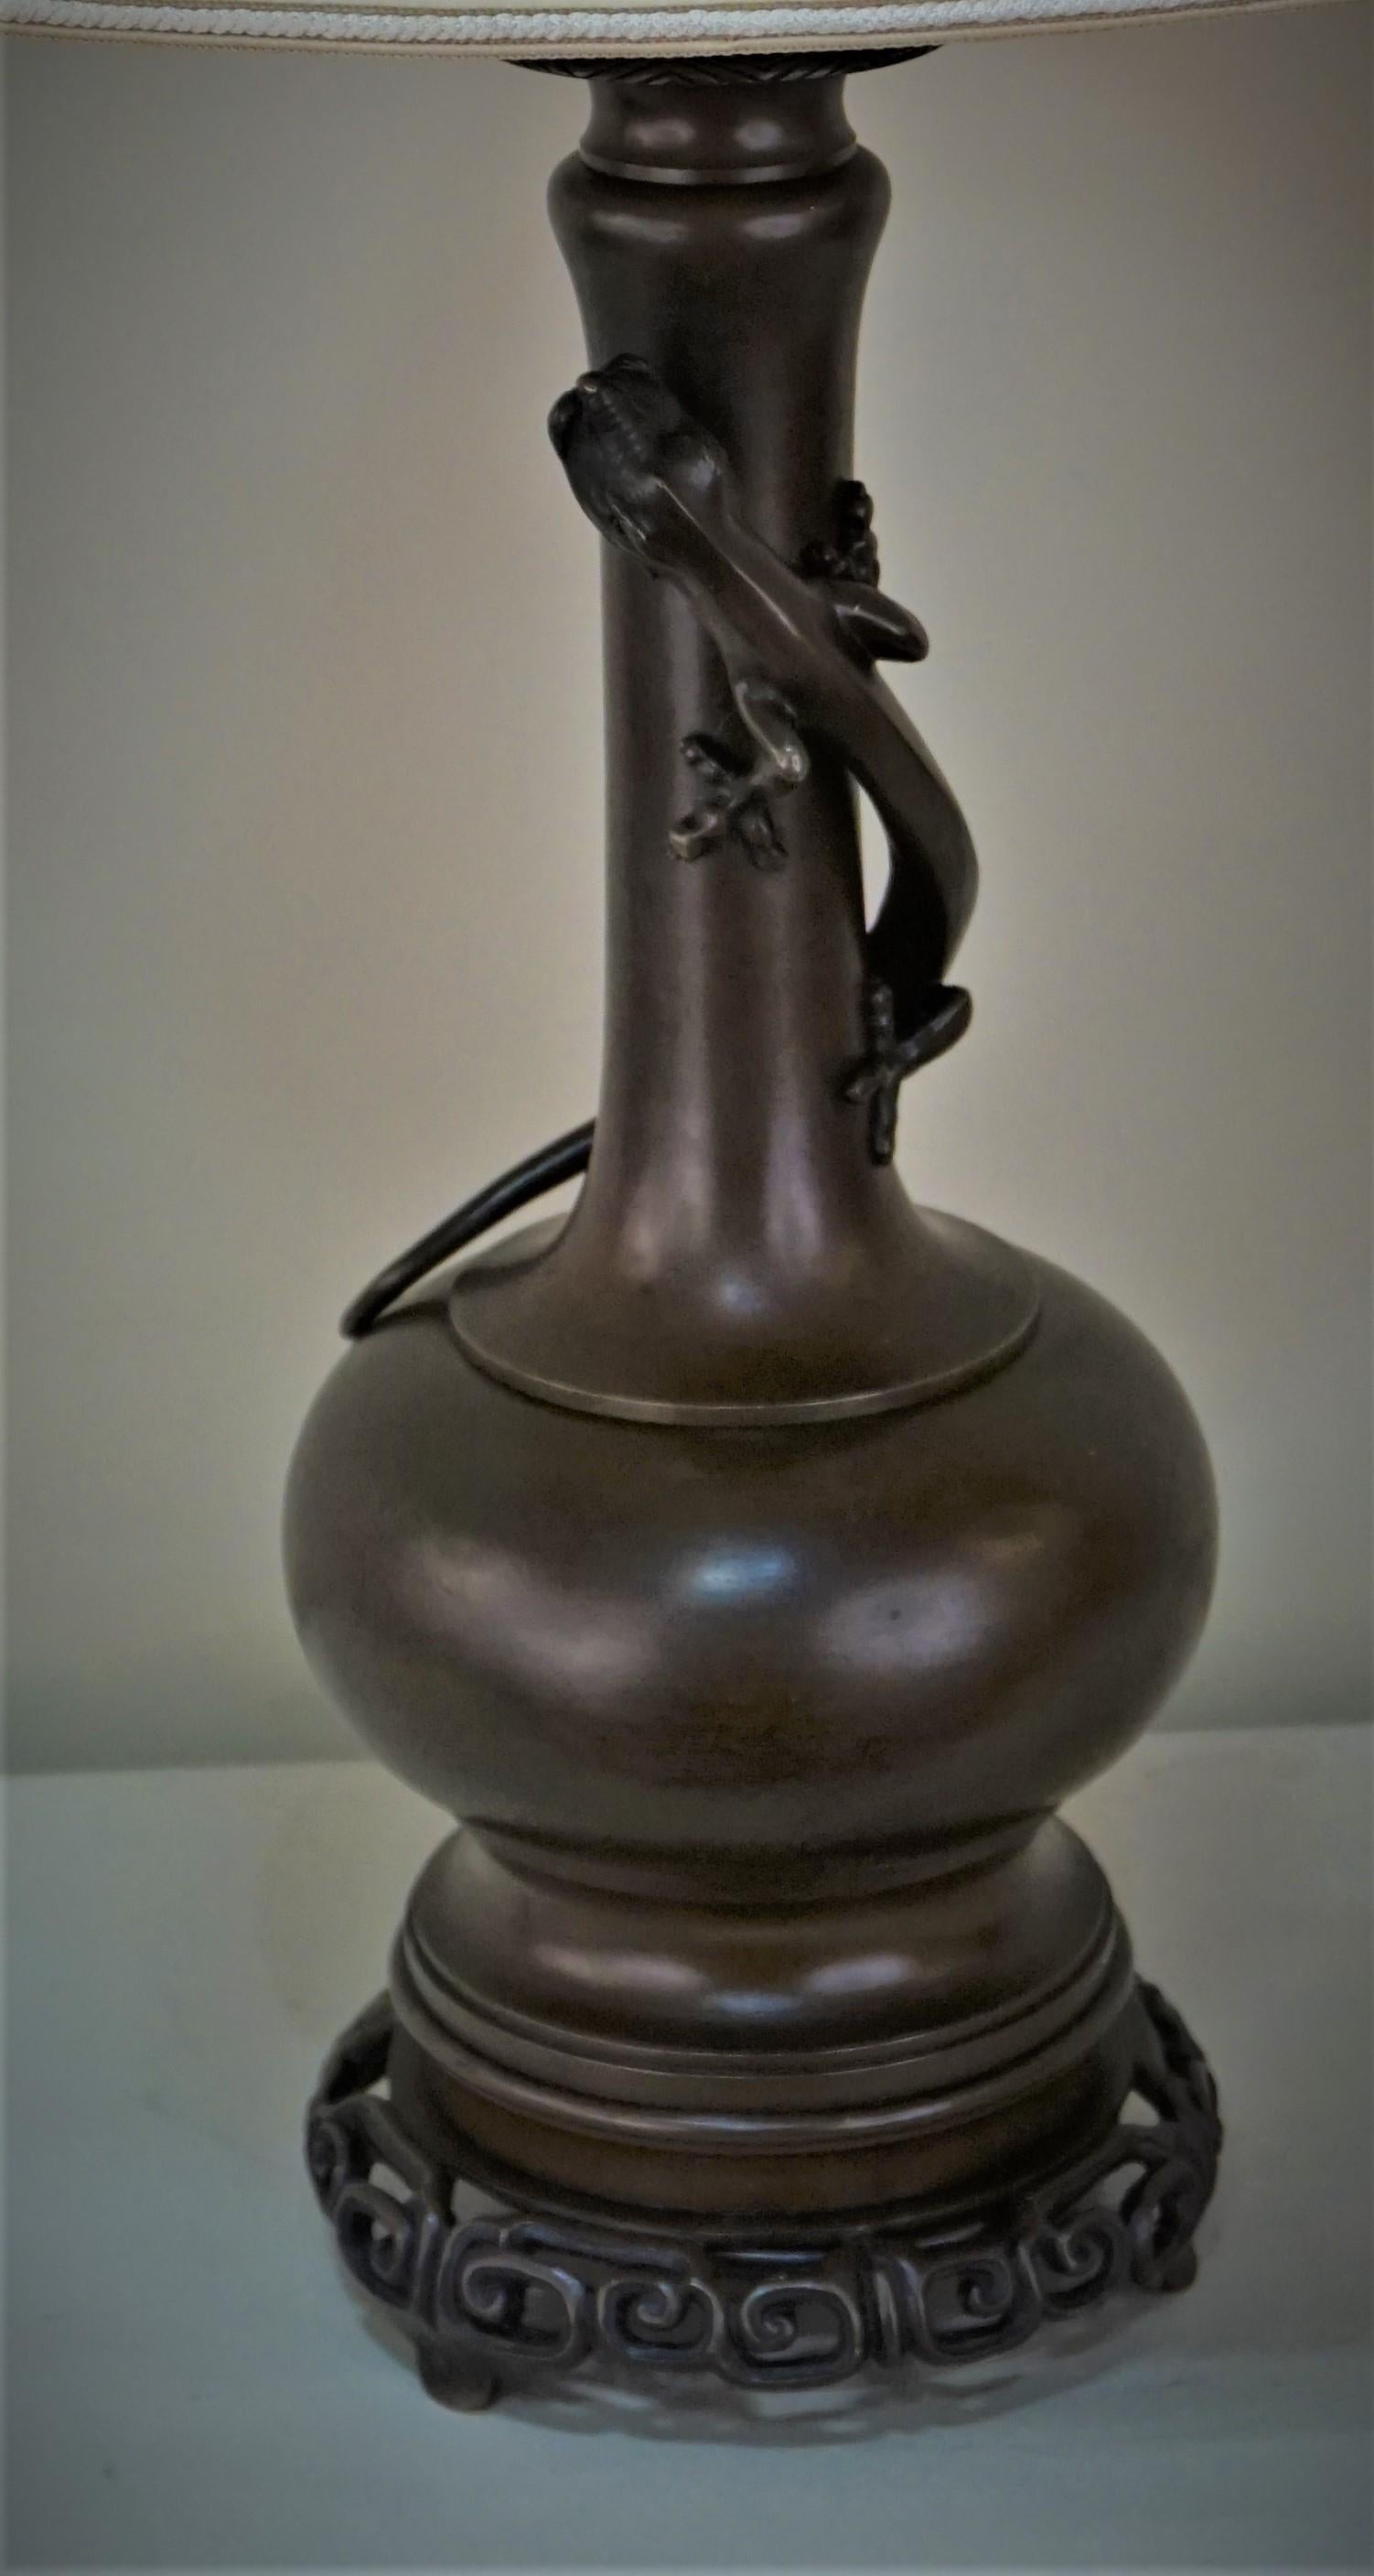 19th century oil lamp